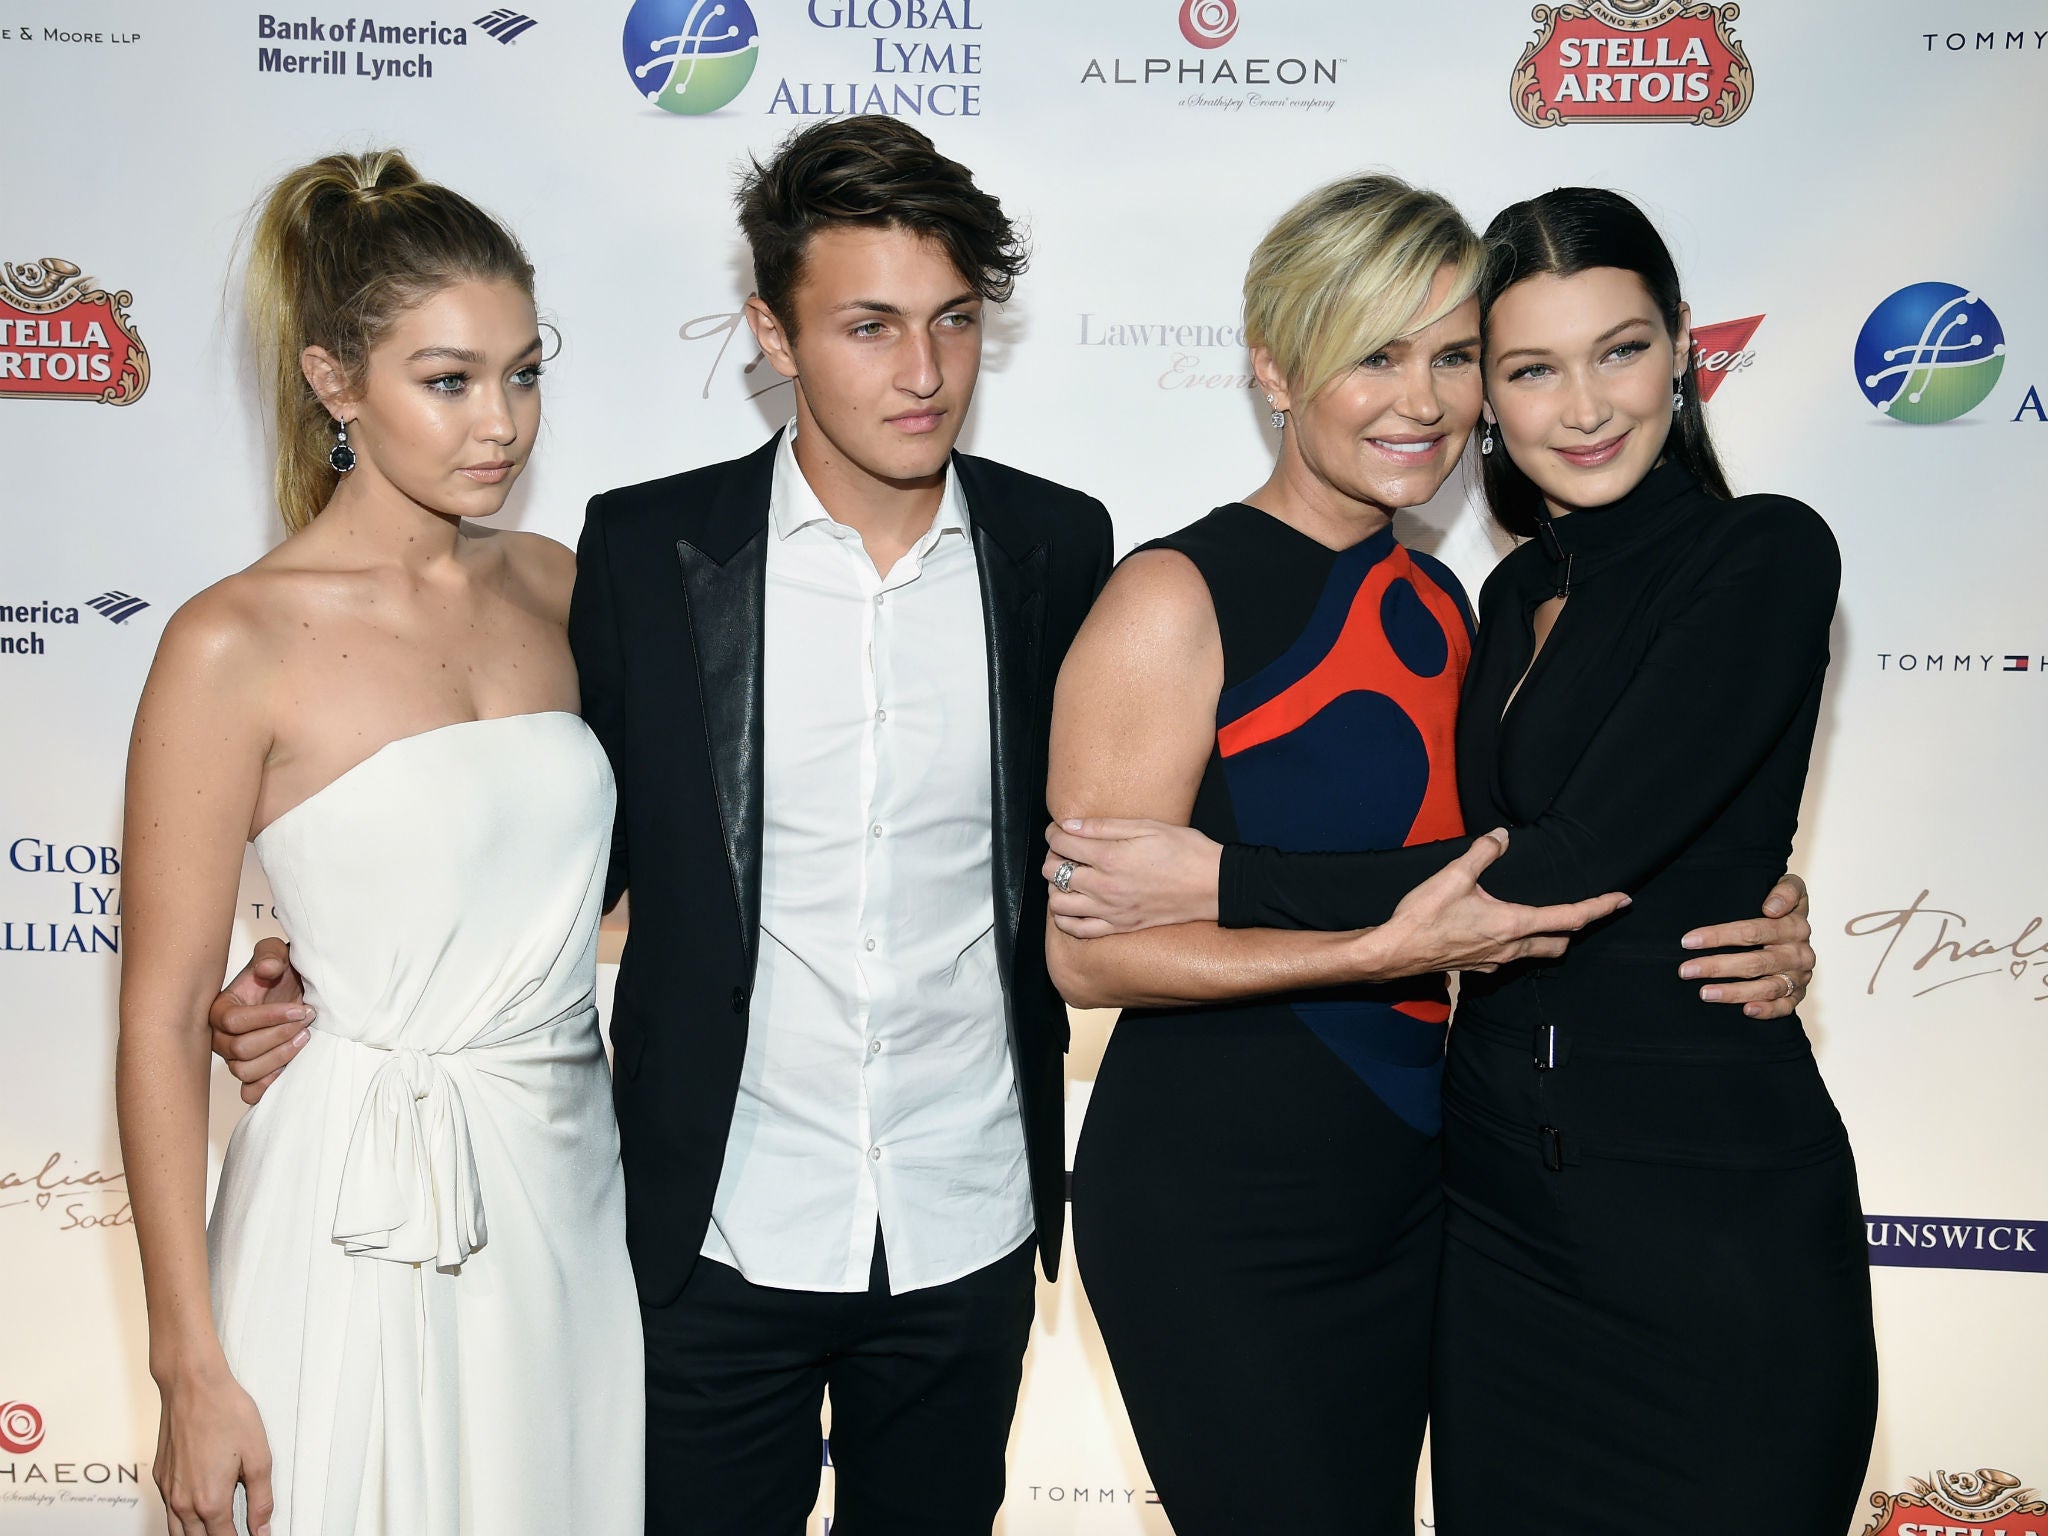 Gigi Hadid, Anwar Hadid, Yolanda Foster and Bella Hadid attended the award ceremony in New York